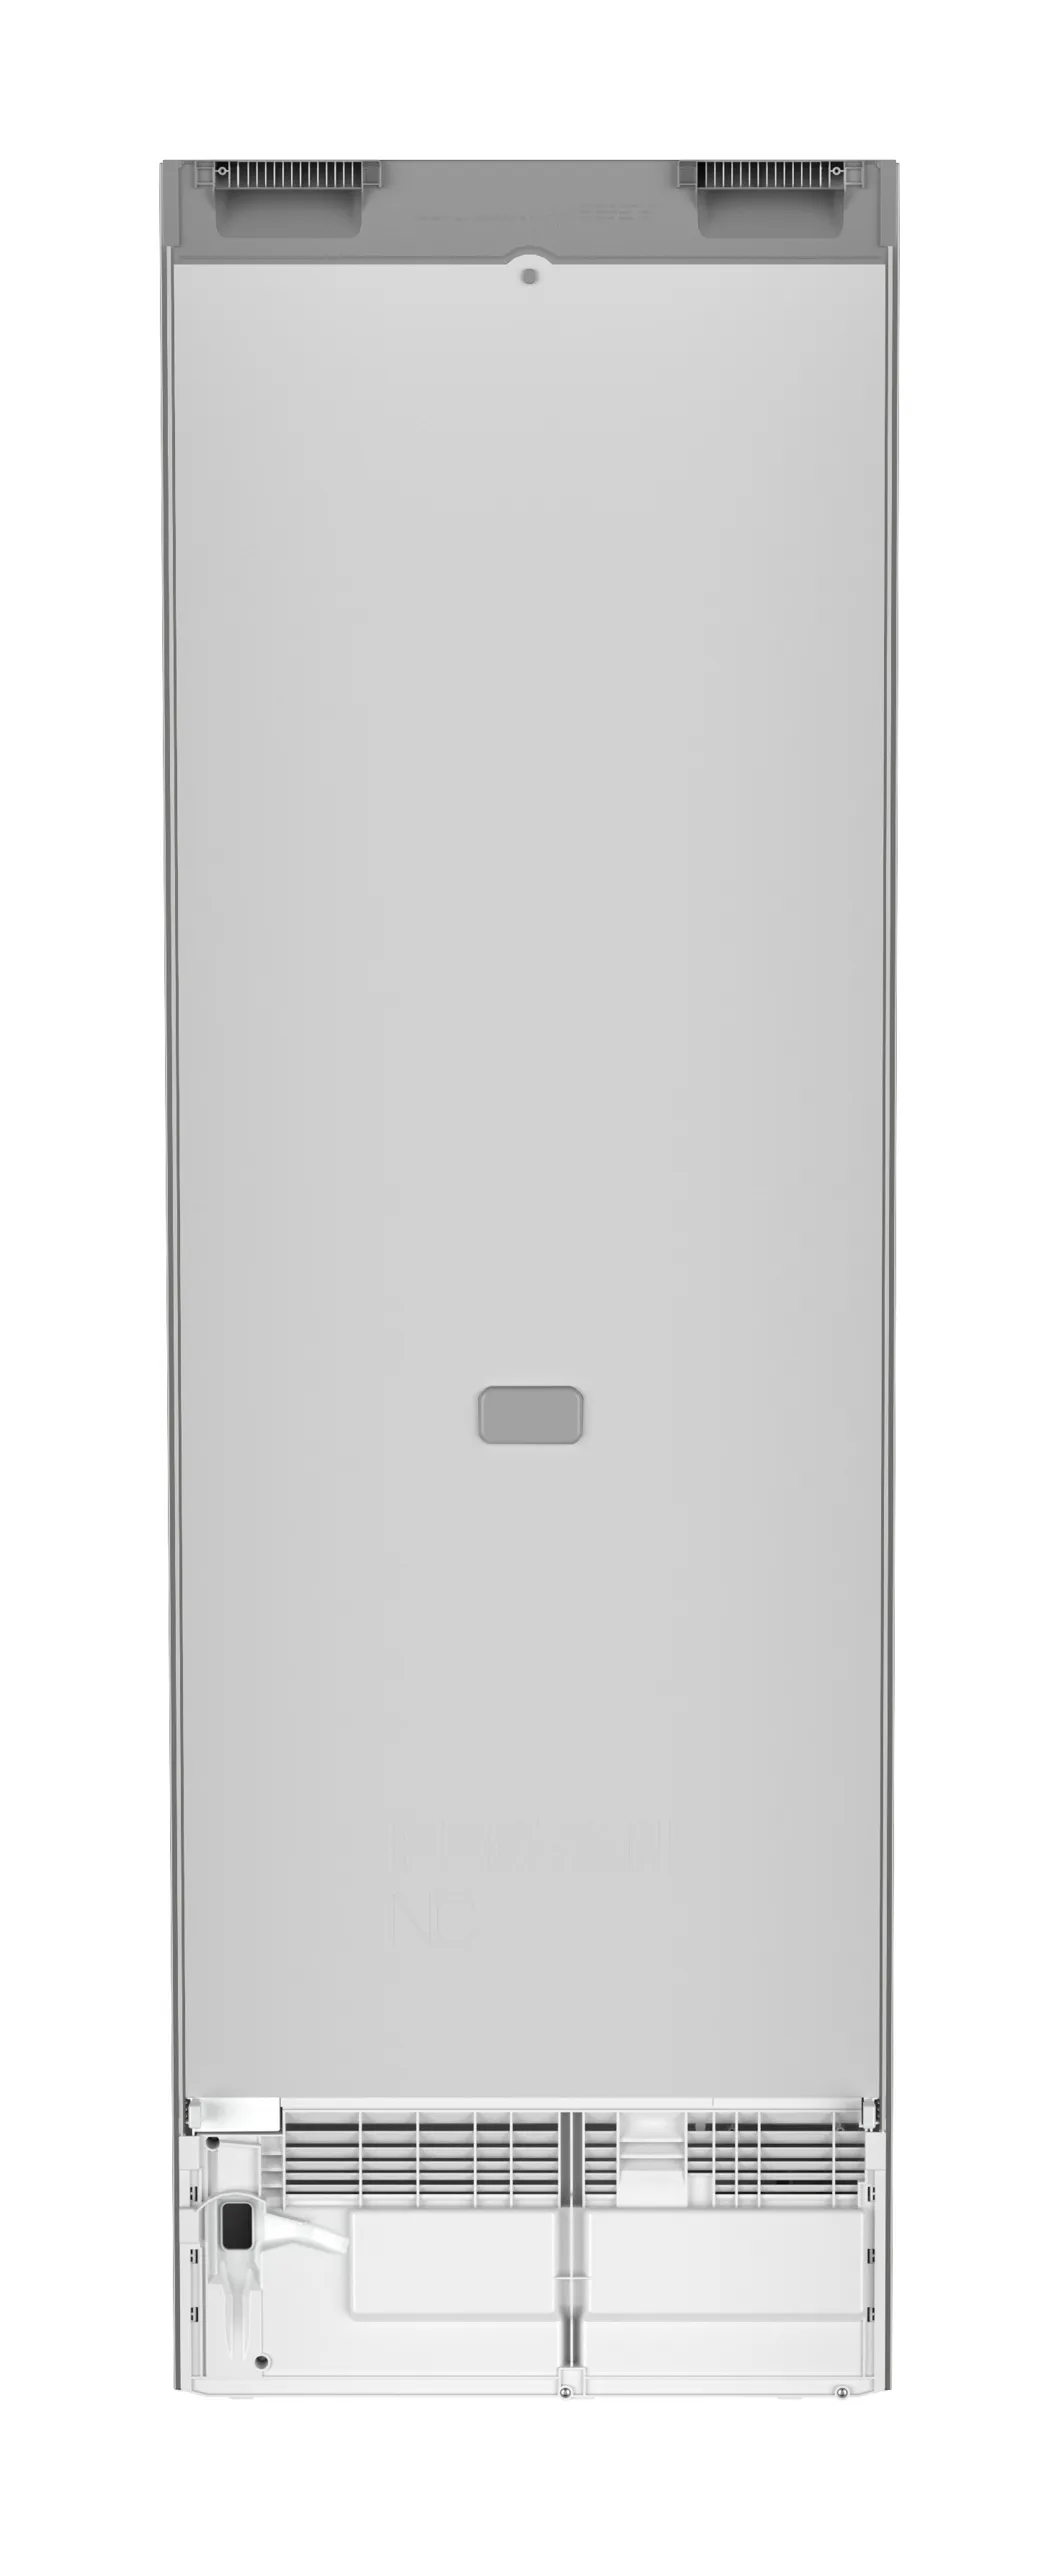 Single door refrigerator 60 cm RBsfe 5221 Liebherr